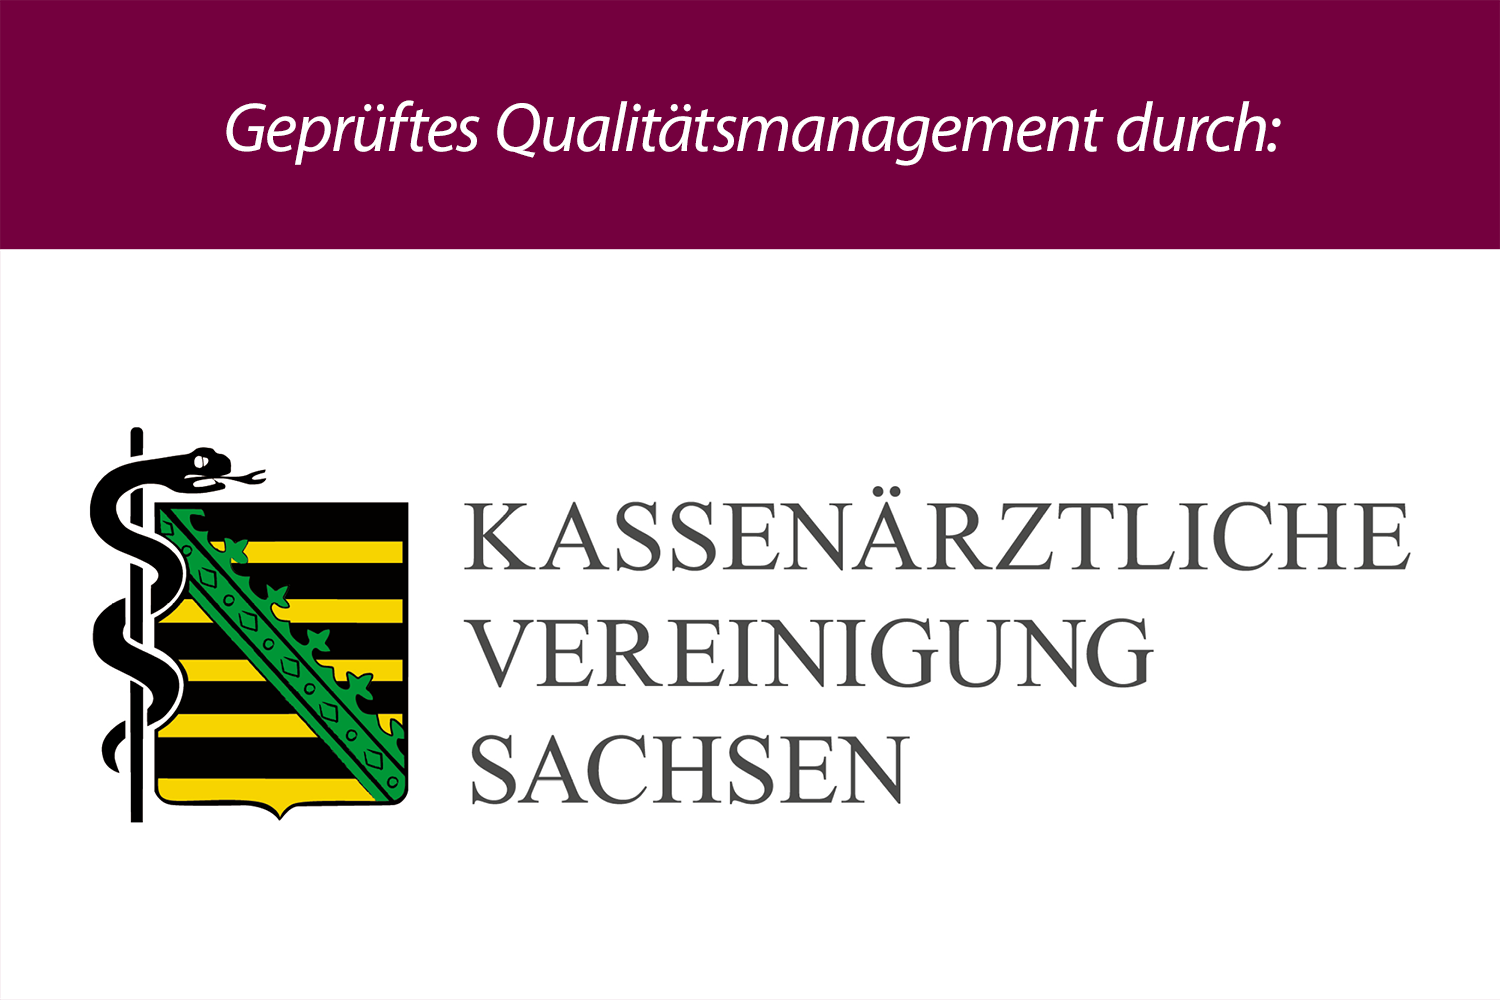 Geprüftes Qualitätsmagagment durch Kassenärztliche Vereinigung Sachsen (Logo)